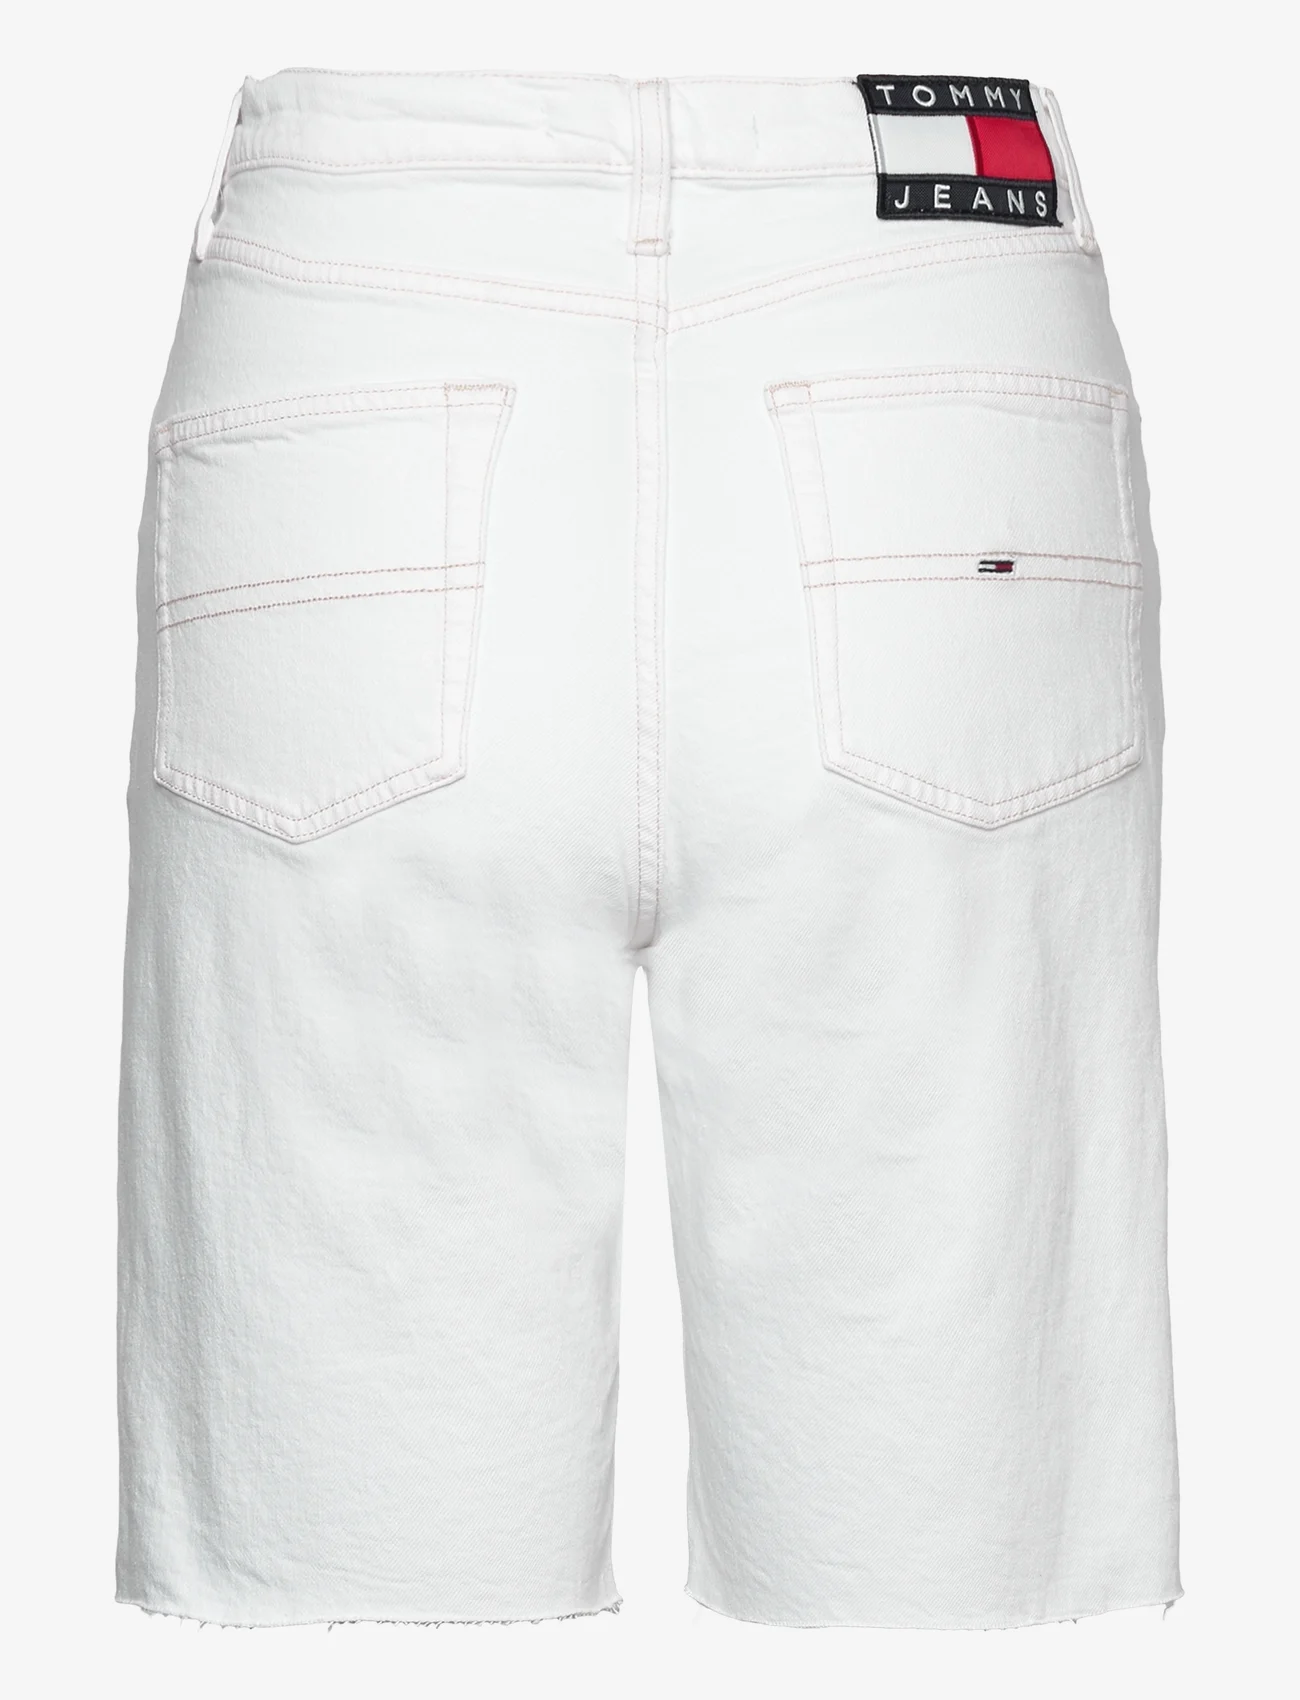 Tommy Jeans - HARPER HR BERMUDA BG0196 - denimshorts - denim color - 1